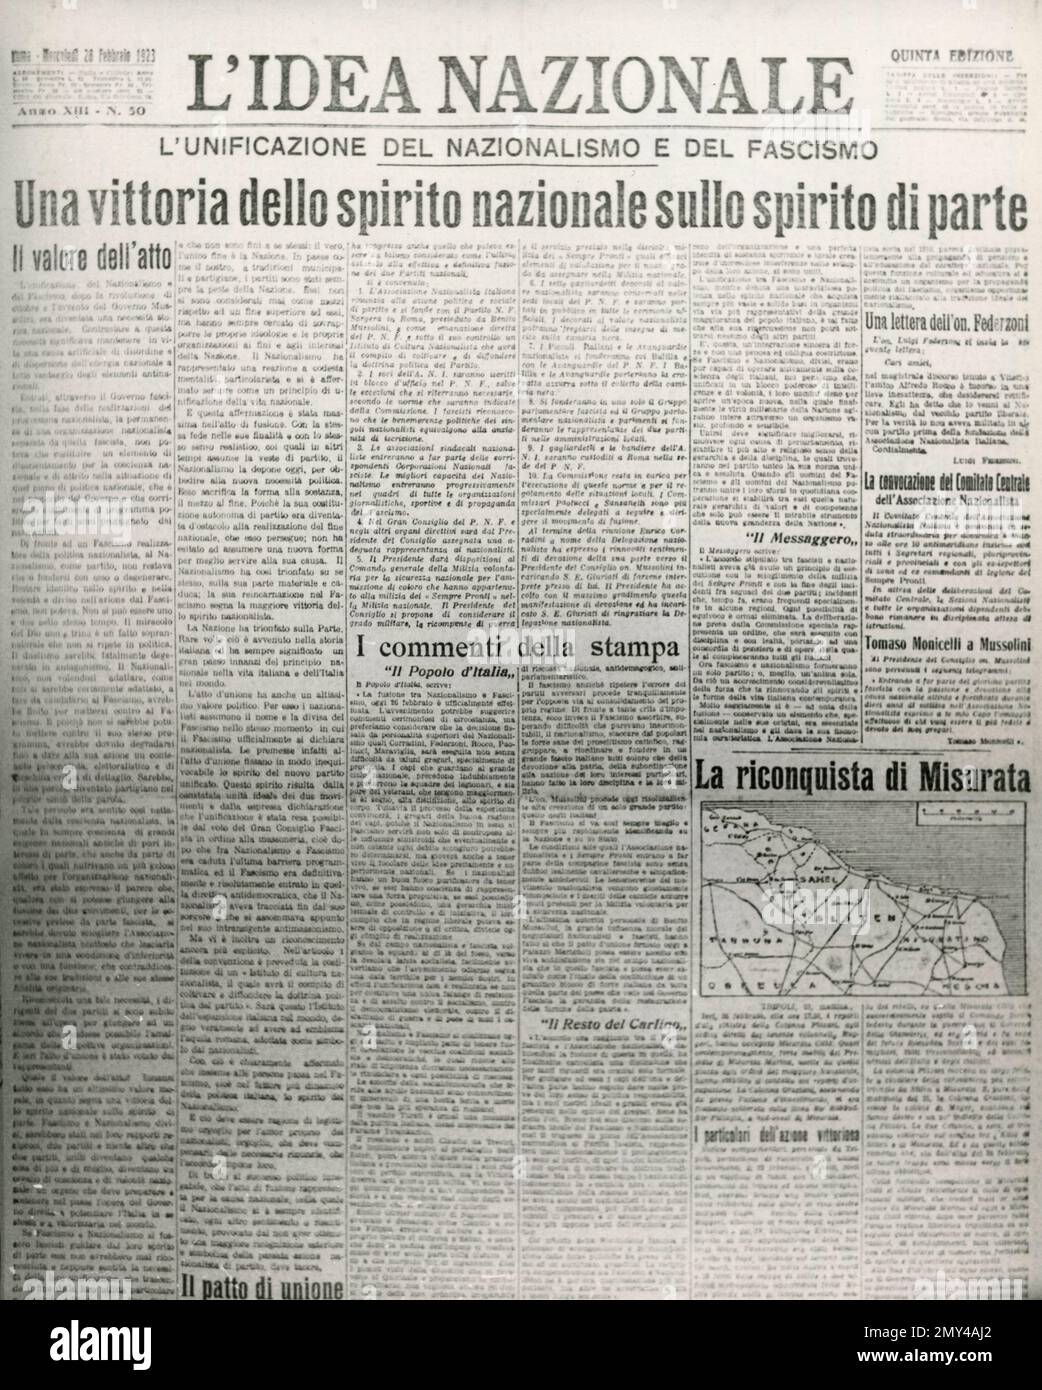 Titelseite der italienischen Zeitung L'idea Nazionale über die Vereinigung von Nationalismus und Faschismus, Italien, 28. Februar 1923 Stockfoto